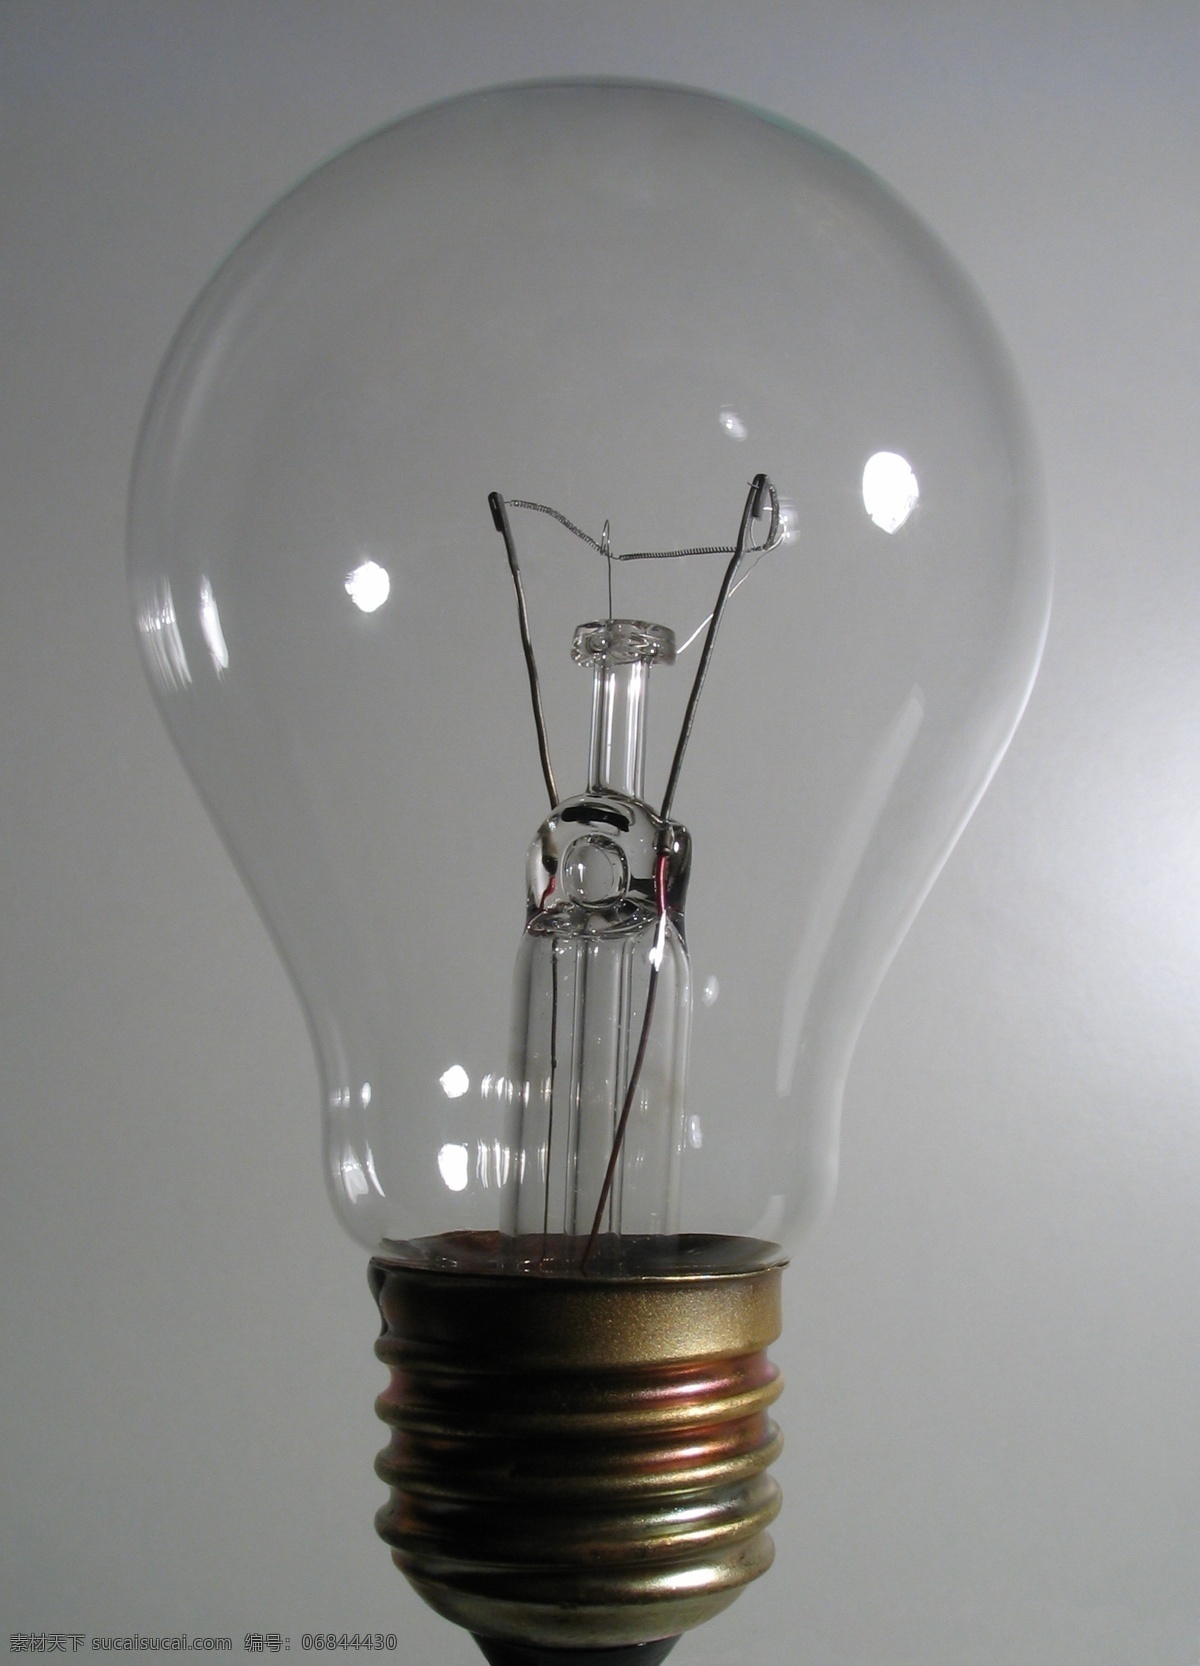 电灯泡 图 能源概念 灯泡 绿色能源 环保能源 生态能源 洁净能源 可再生资源 能源环保 生活用品 生活百科